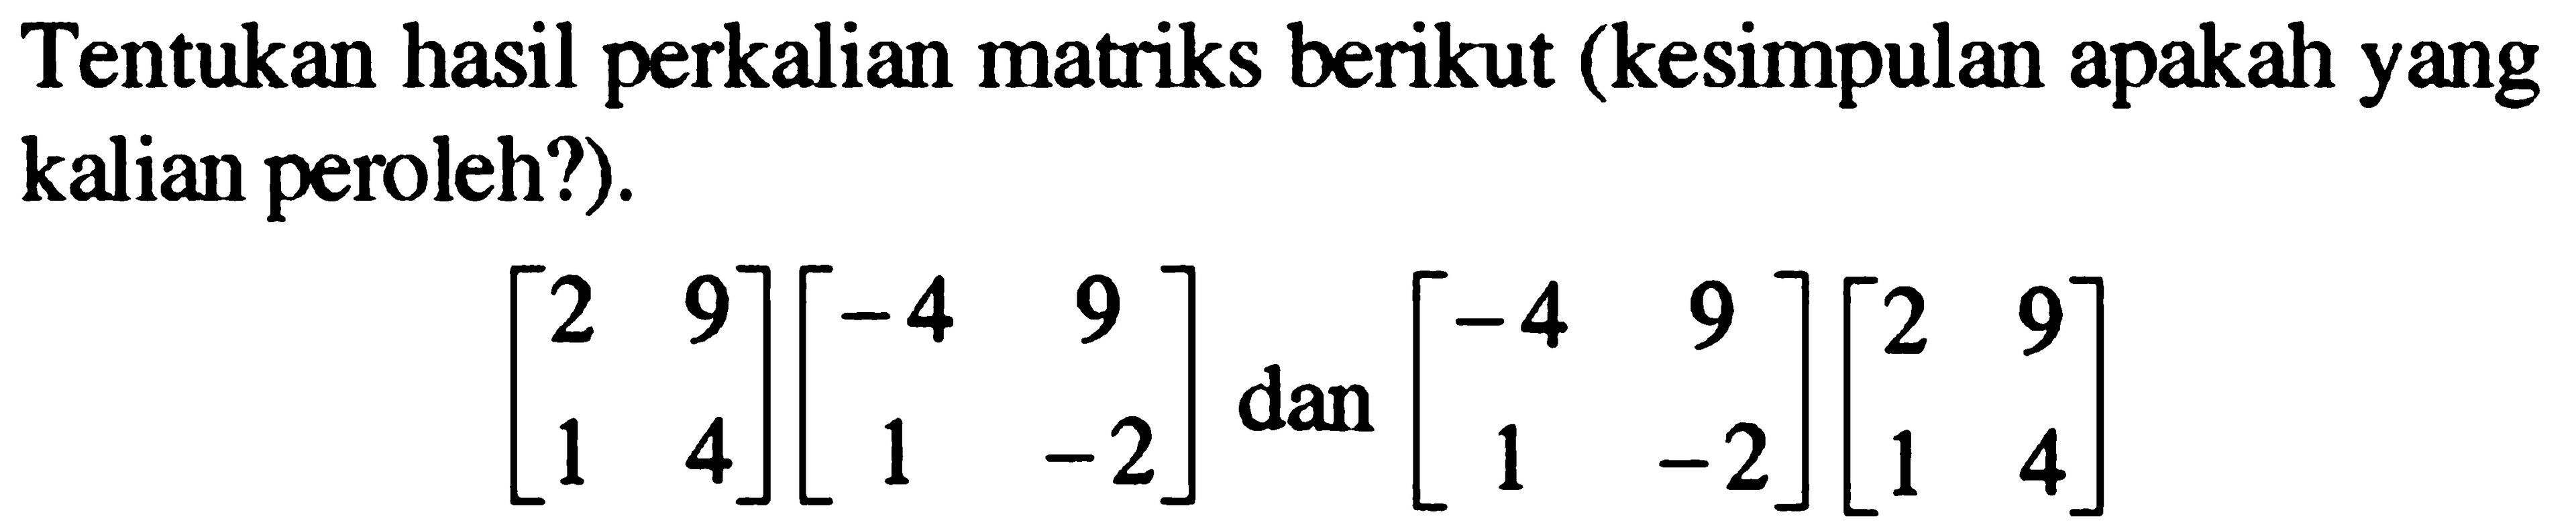 Tentukan hasil perkalian matriks berikut (kesimpulan apakah yang kalian peroleh?). [2 9 1 4][-4 9 1 -2] dan [-4 9 1 -2][2 9 1 4]